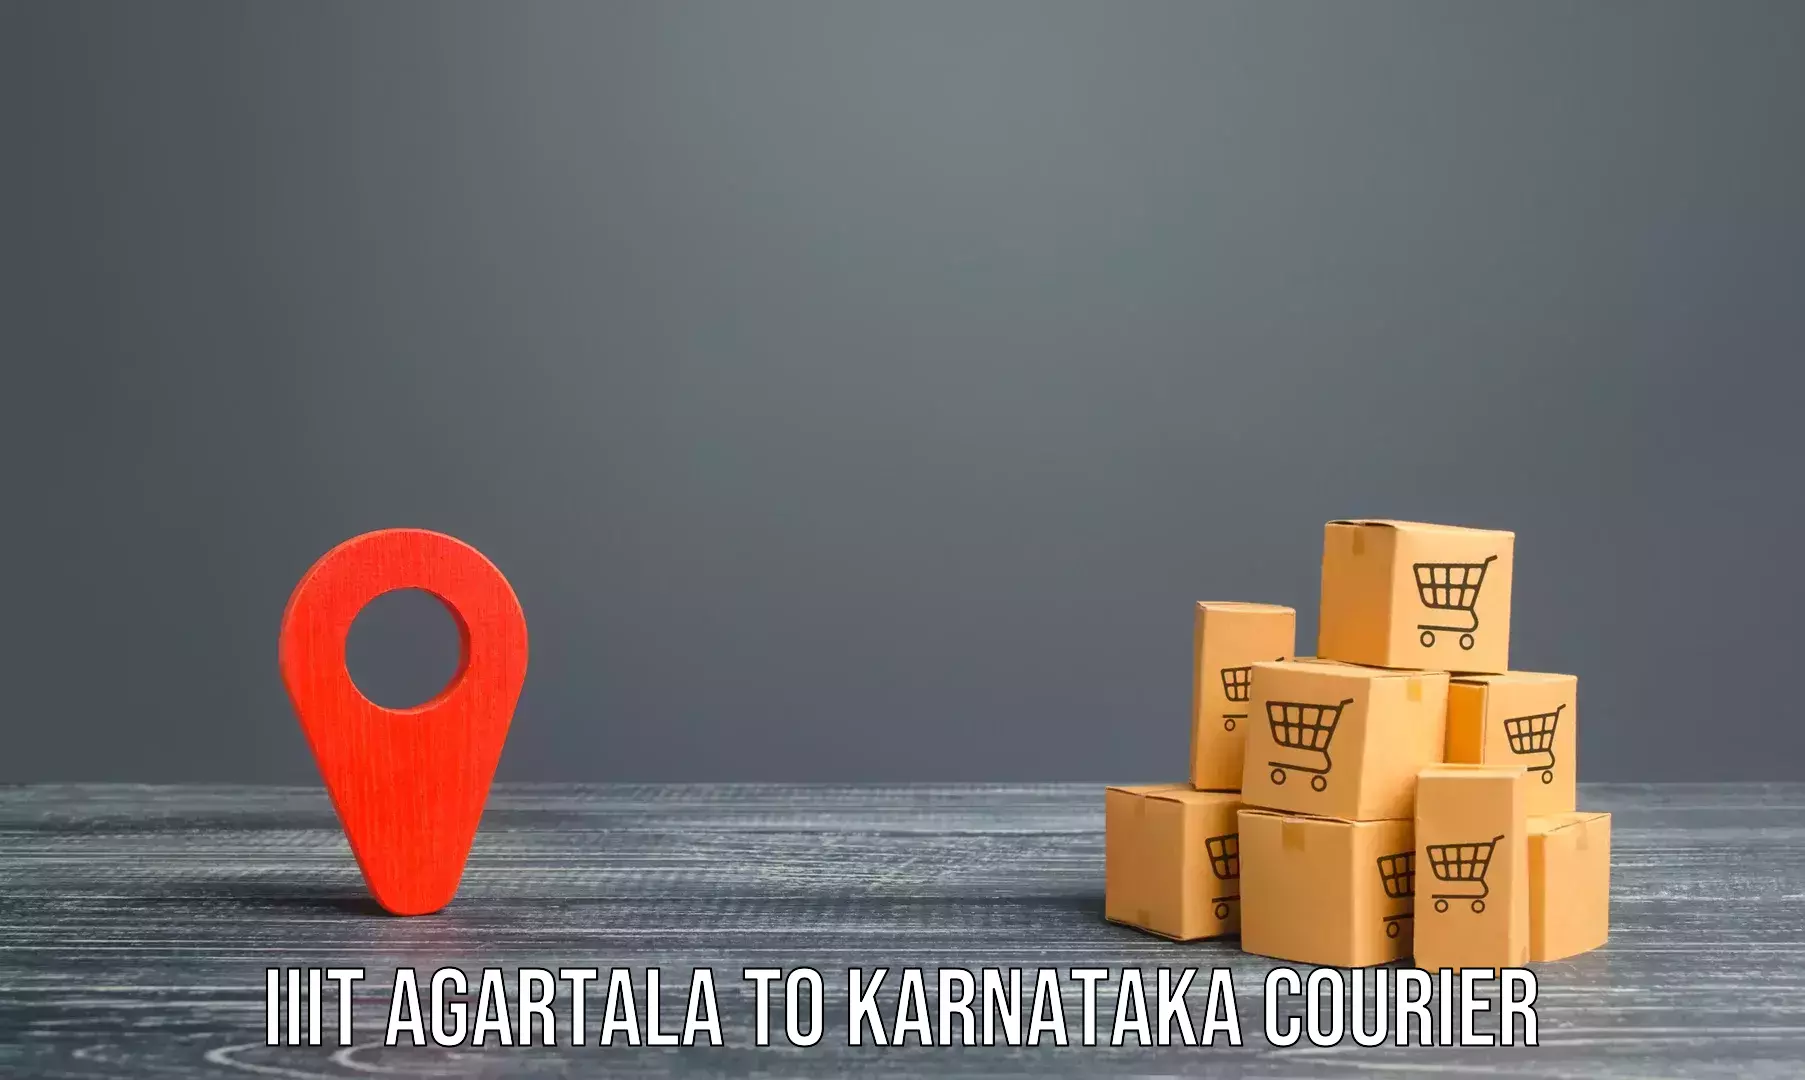 Furniture handling services IIIT Agartala to Kanakapura